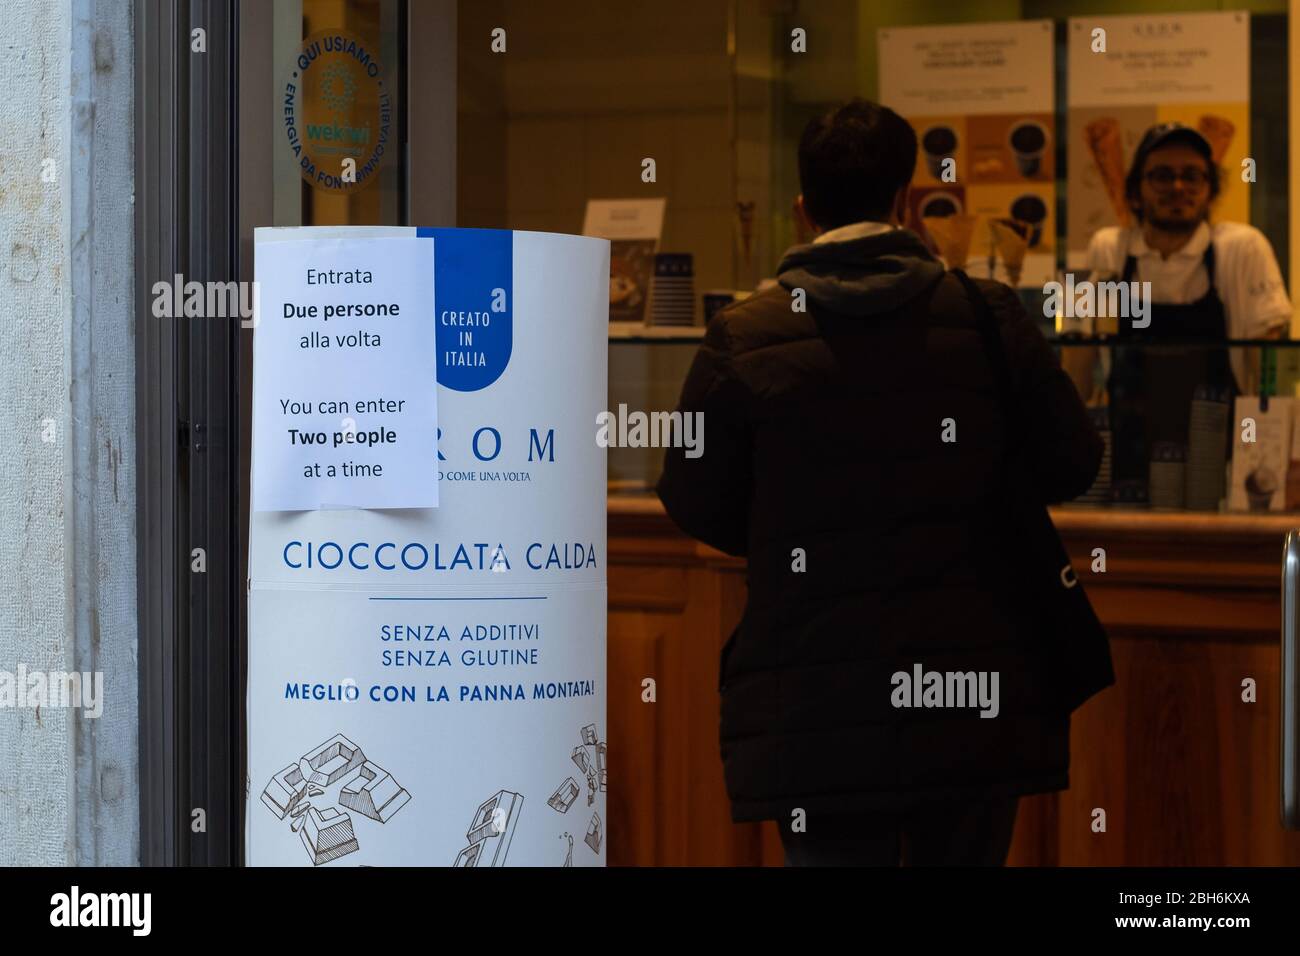 VENEZIA, ITALIA - APRILE 2020: Un negozio di gelato con accesso limitato durante il blocco nazionale per la pandemia Covid-19. Foto Stock